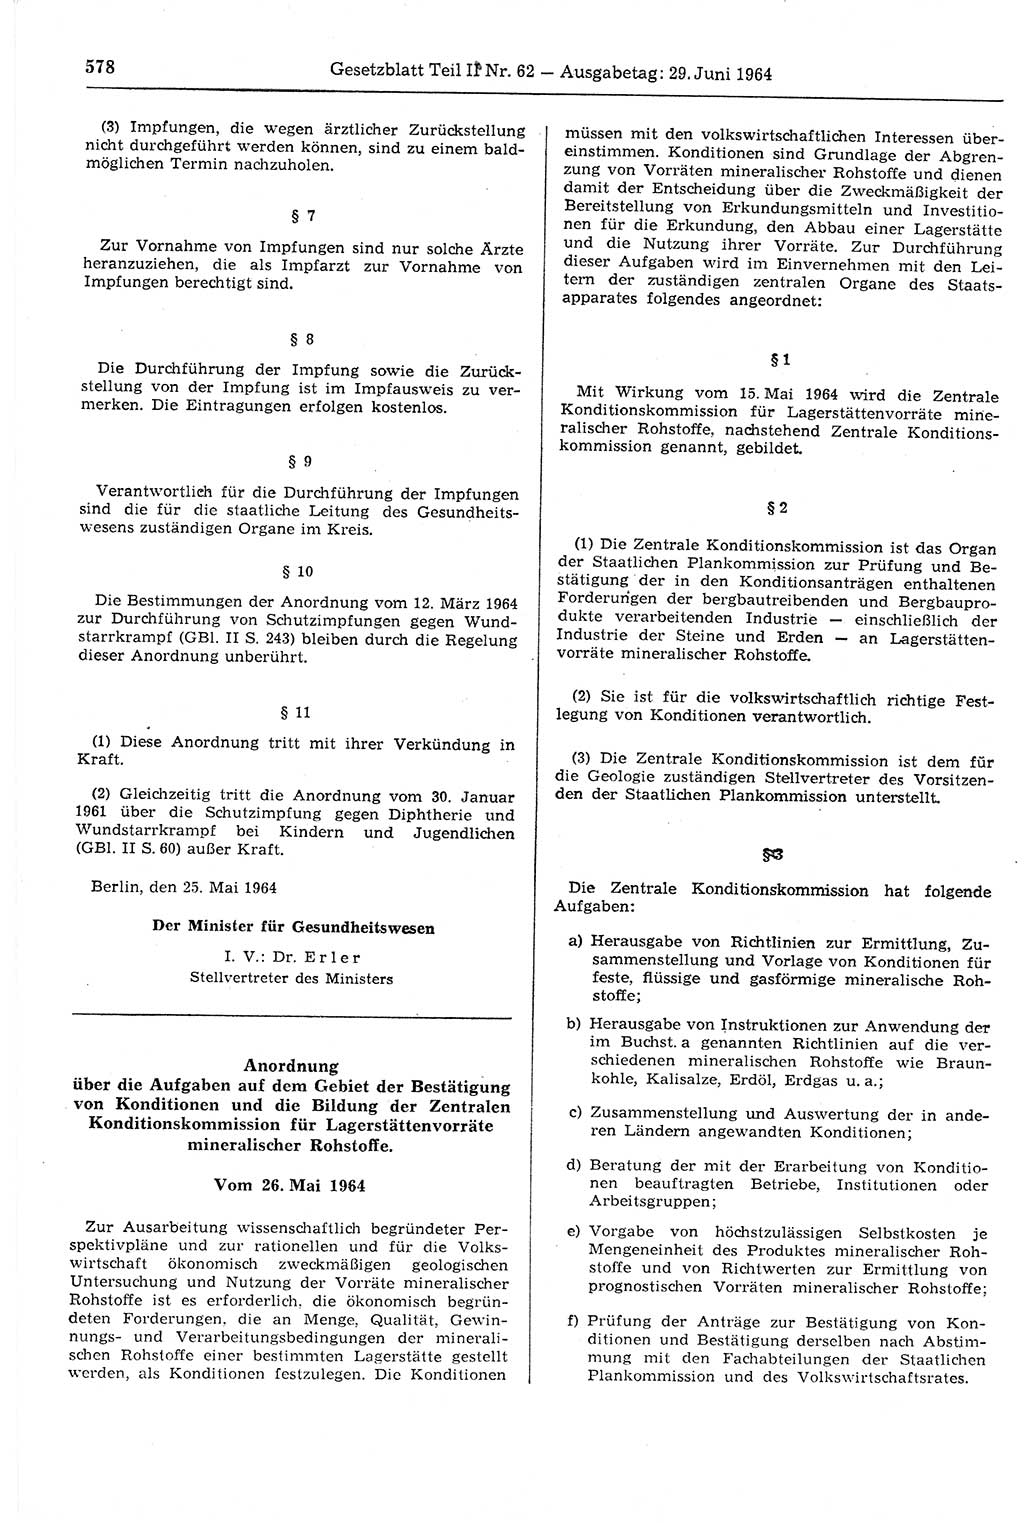 Gesetzblatt (GBl.) der Deutschen Demokratischen Republik (DDR) Teil ⅠⅠ 1964, Seite 578 (GBl. DDR ⅠⅠ 1964, S. 578)